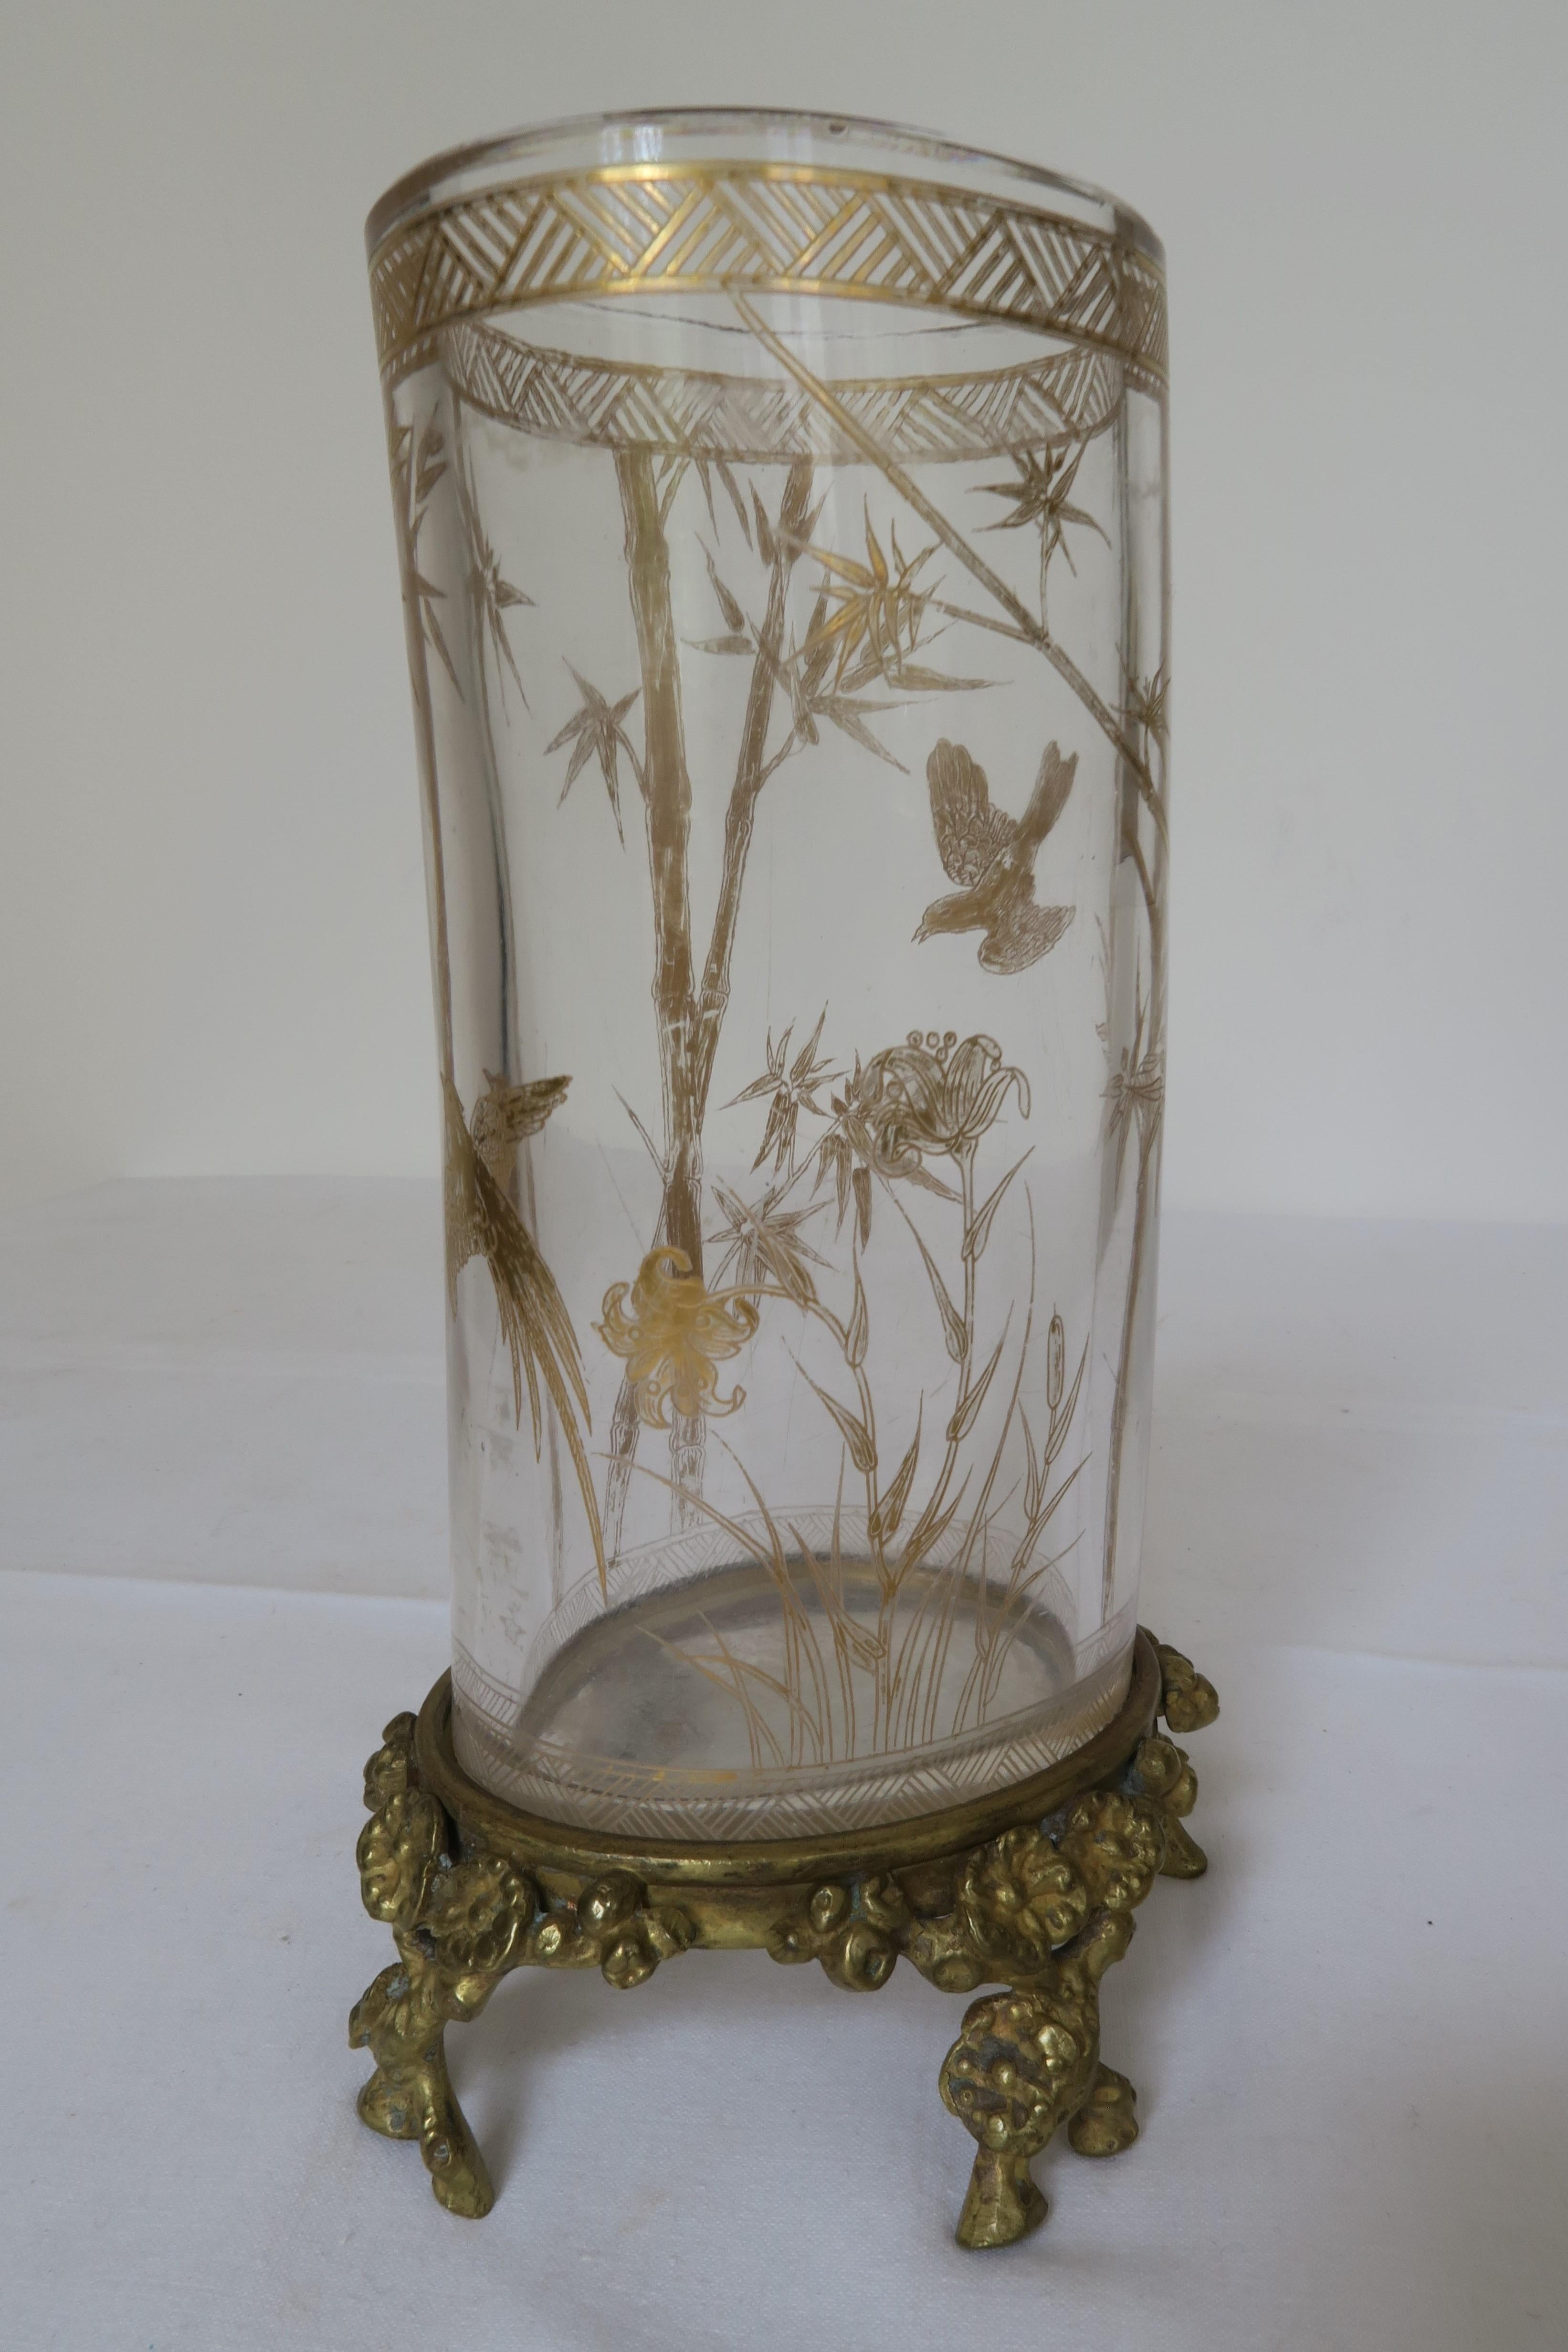 Nous vendons un vase spécial fabriqué par Baccarat. Le cylindre de verre légèrement courbé a été doré avec un motif complexe d'oiseaux, de fleurs et de bambous. Le pied du vase est également façonné en forme de brindilles ornées de fleurs